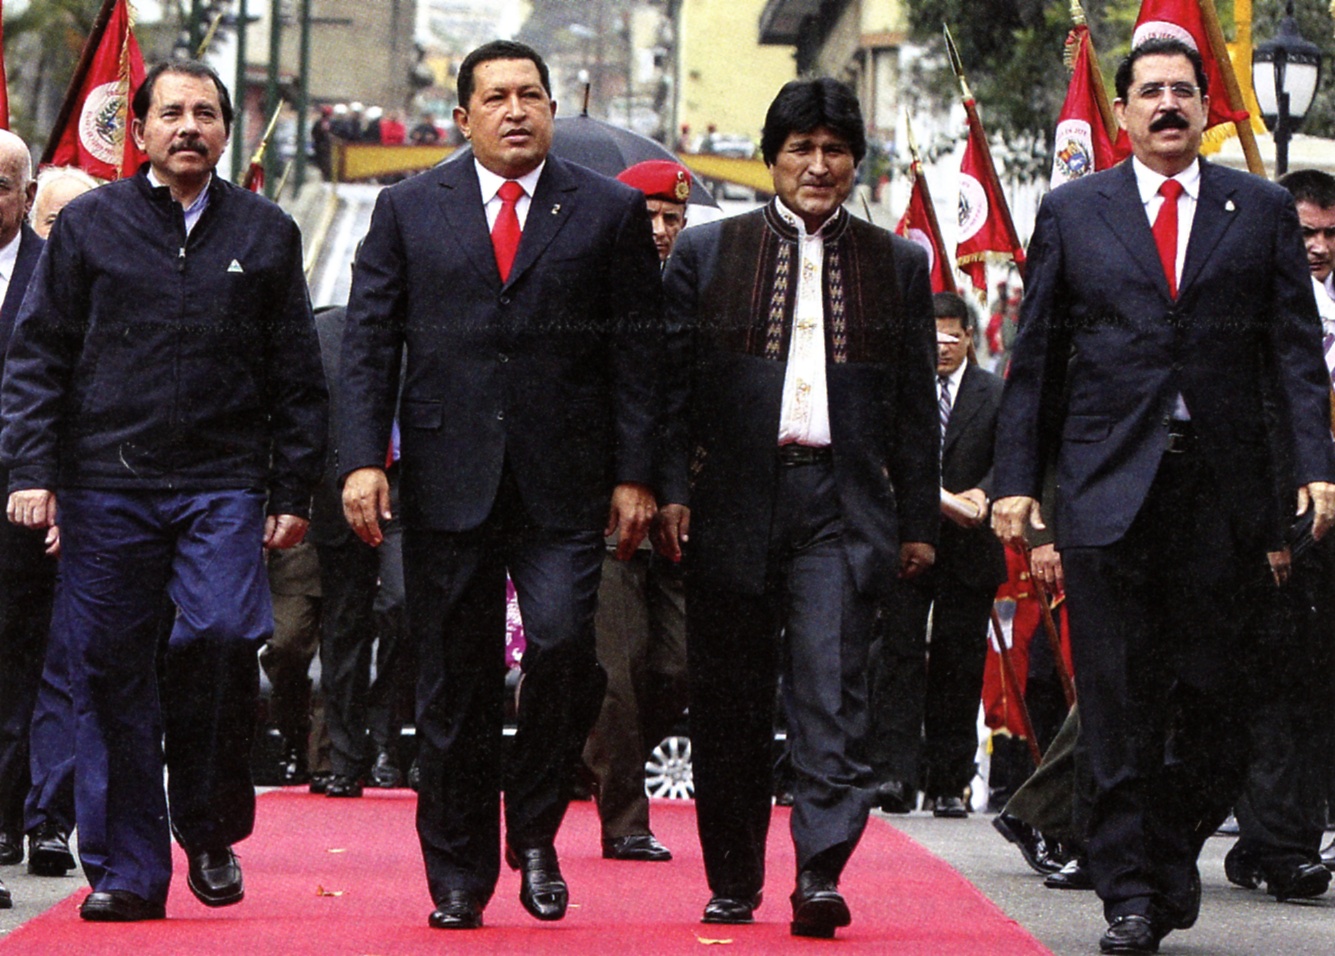 Daniel Ortega, Hugo Chavez, Evo Morales, Mel Zelaya